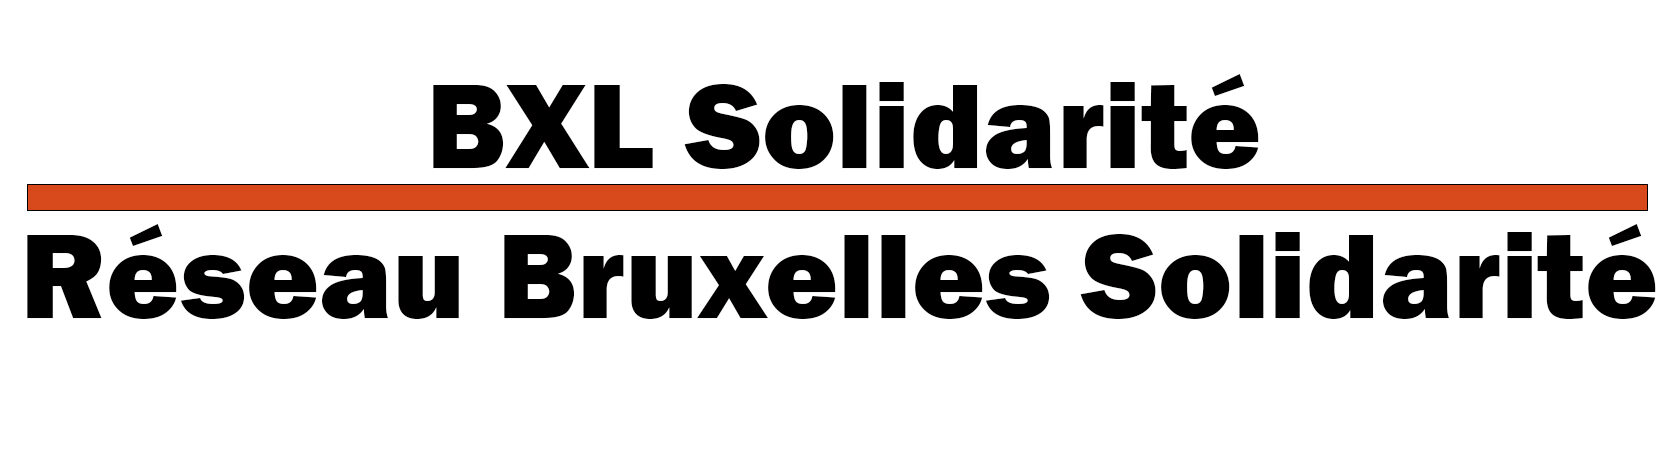 BXL Solidarité